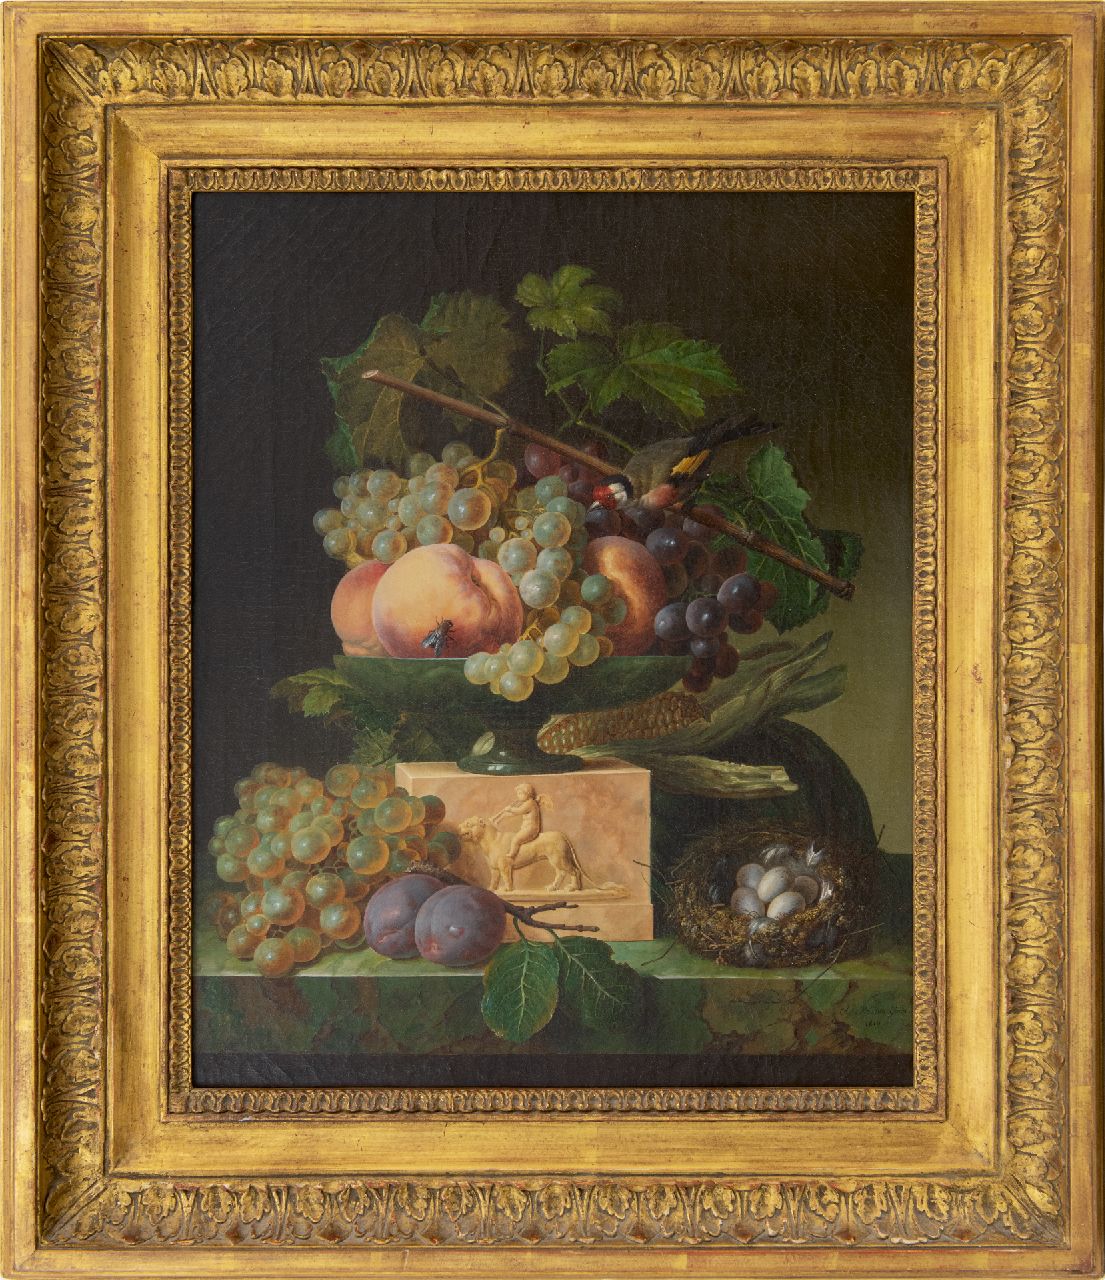 Génin O.M.  | Olympe Mouette Génin | Schilderijen te koop aangeboden | Stilleven met druiven, een vogelnestje en een puttertje, olieverf op doek 49,2 x 39,8 cm, gesigneerd rechtsonder en gedateerd 1819